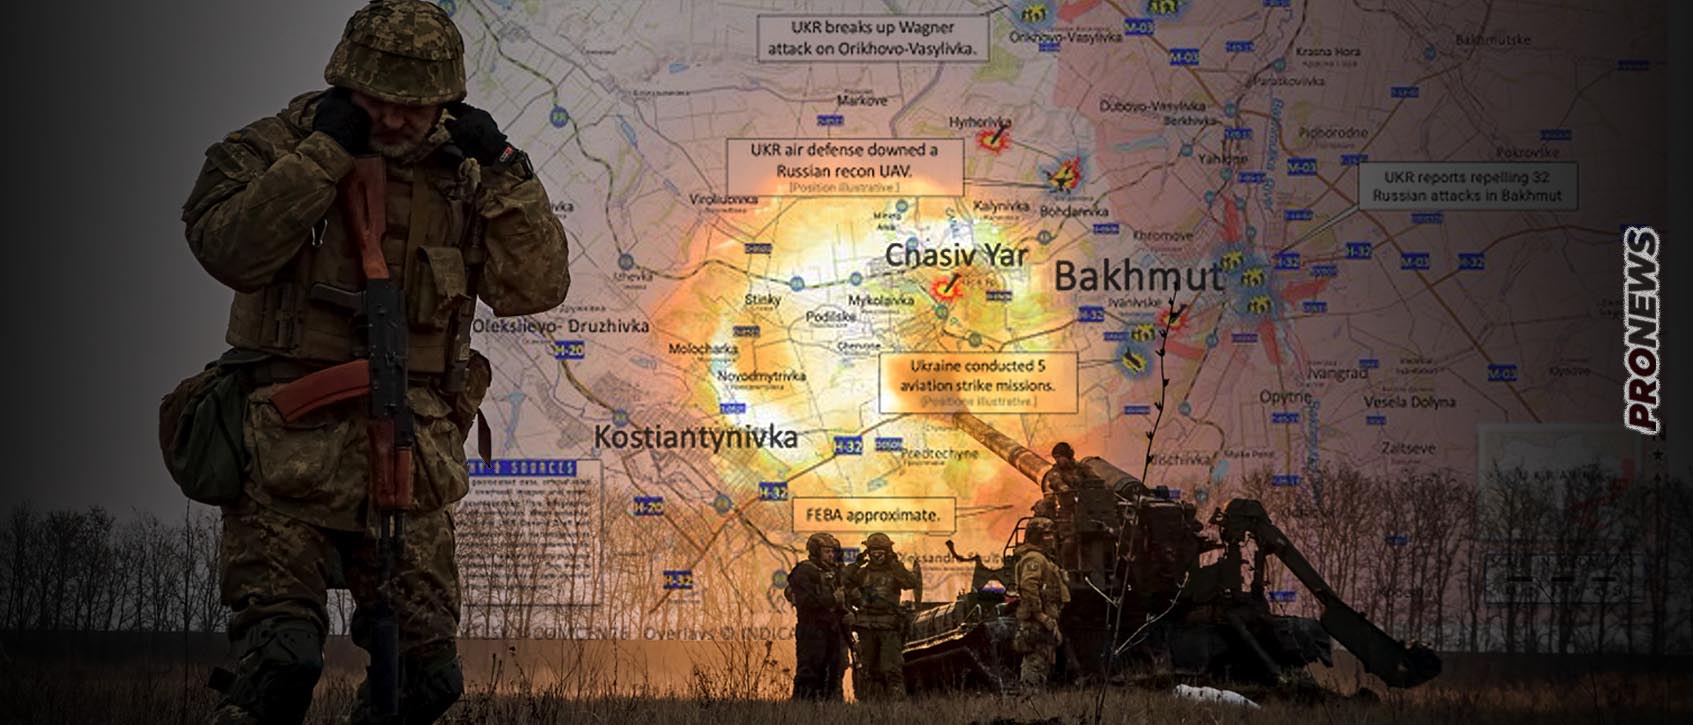 Οι Ρώσοι κατέλαβαν την Κρόμοβε στο Μπάκχμουτ! – Ανοίγει ο δρόμος για το Τσάσιβ Γιαρ